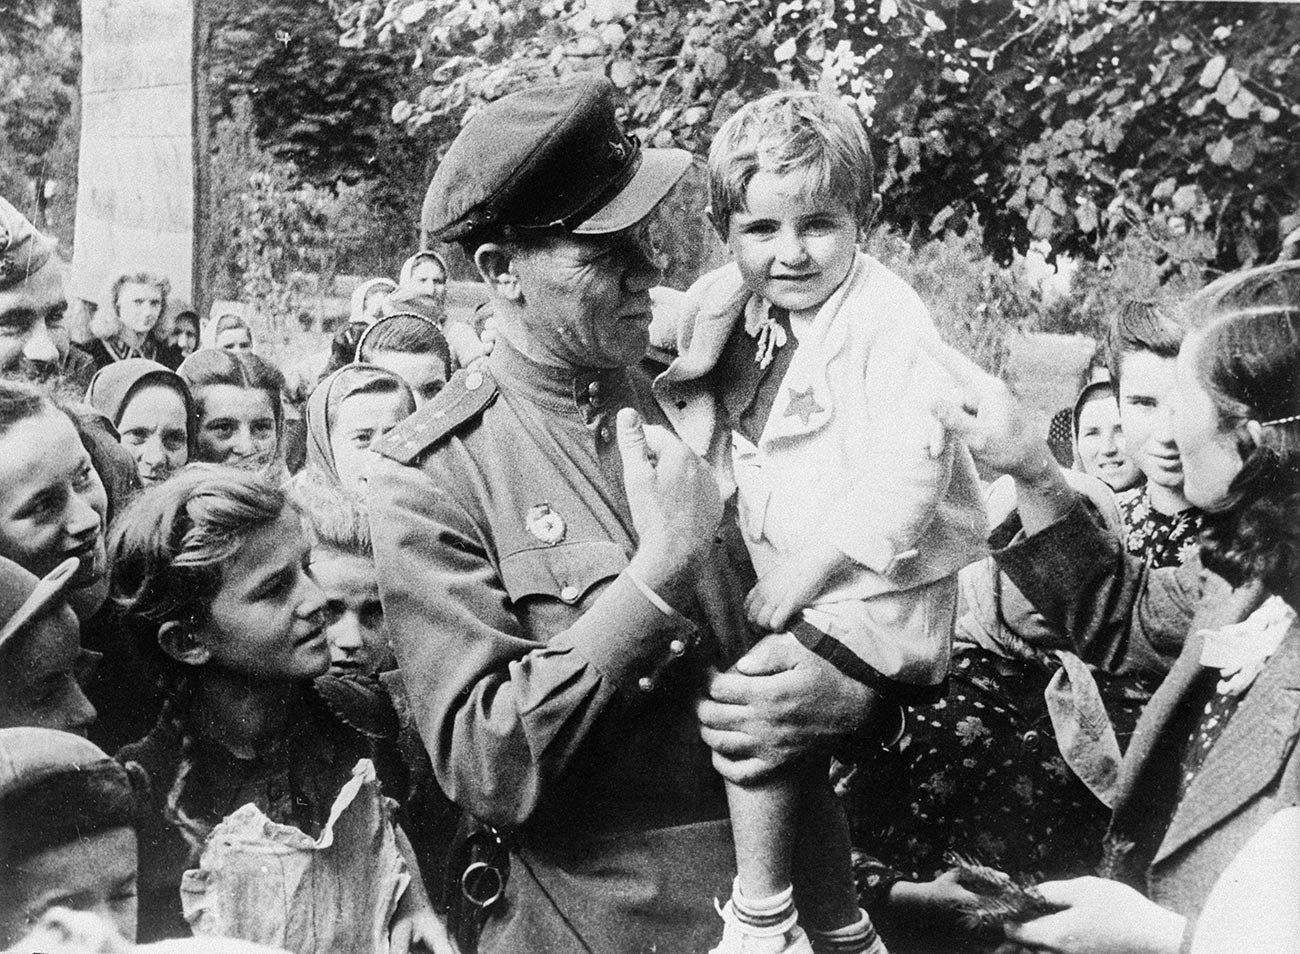 Kapitän der Roten Armee Sergei Iwanow mit einem Kind im befreiten jugoslawischen Dorf Omoljica im Oktober 1944.